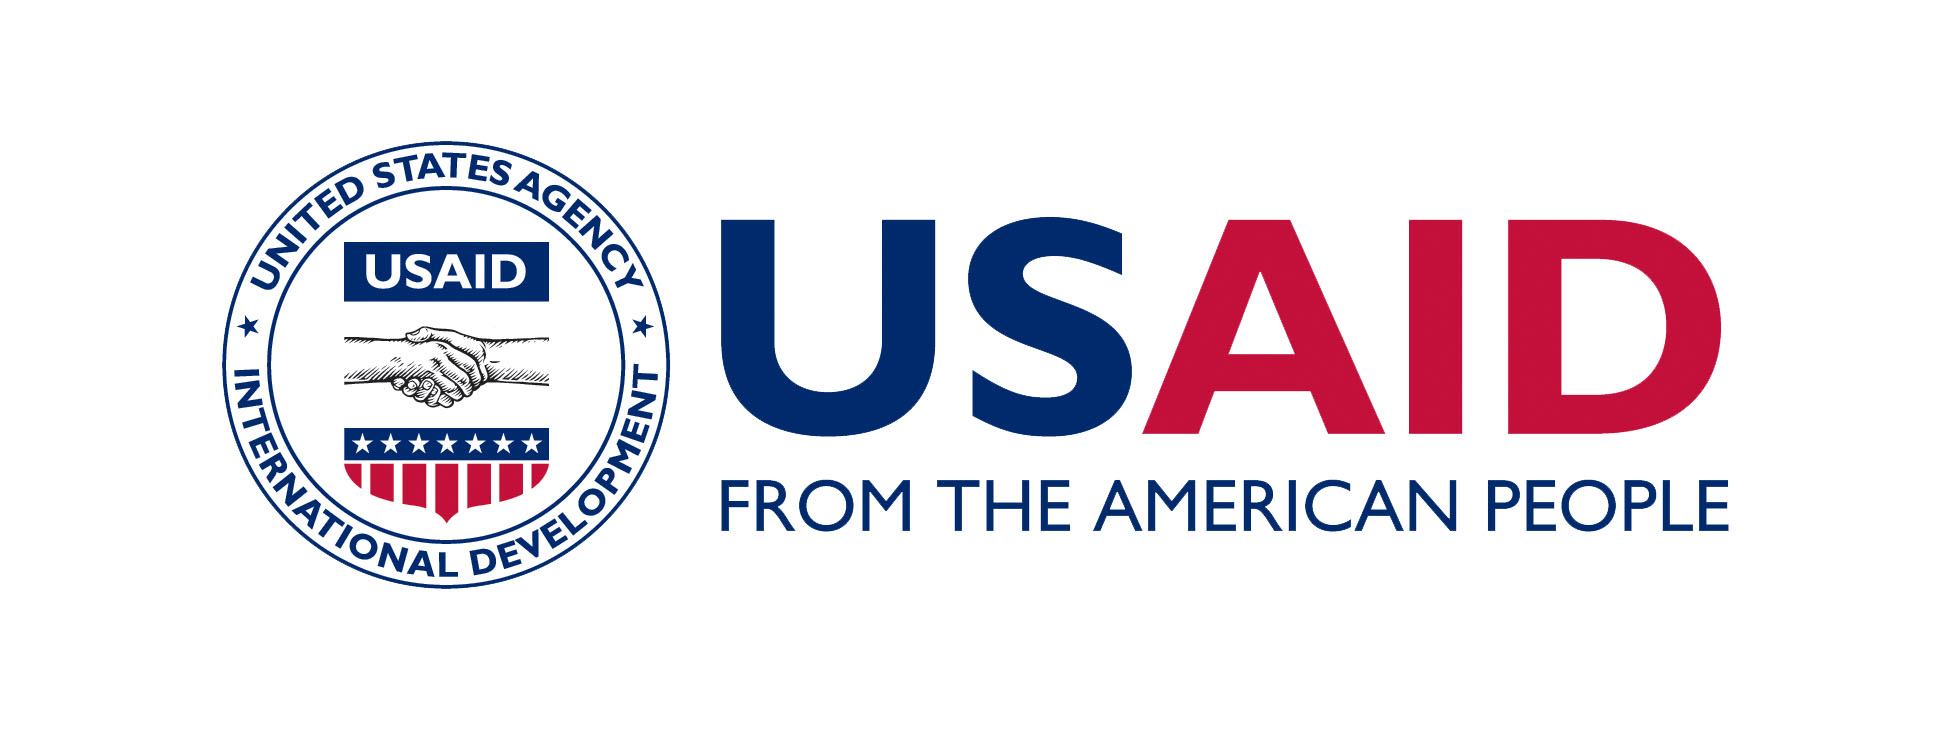 Հայաստանի և ԱՄՆ-ի միջև առևտրաշրջանառության զարգացման համար ԱՄՆ-ը մտադիր է հավելյալ $33 միլիոն ներդնել